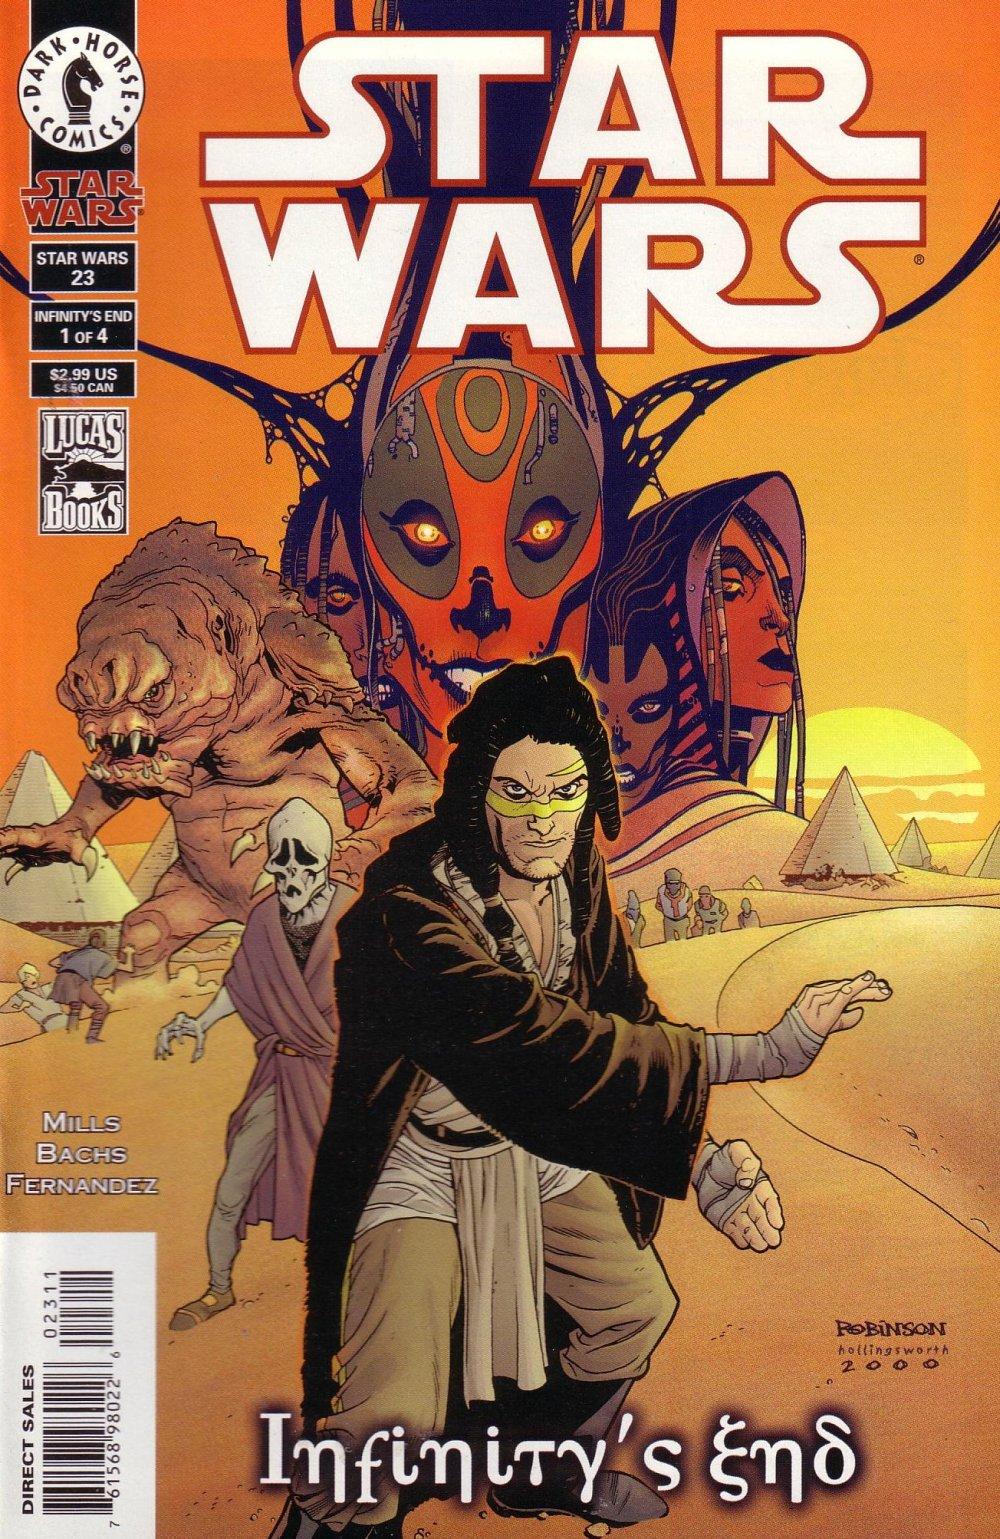 Star Wars: Republic Vol. 1 #23